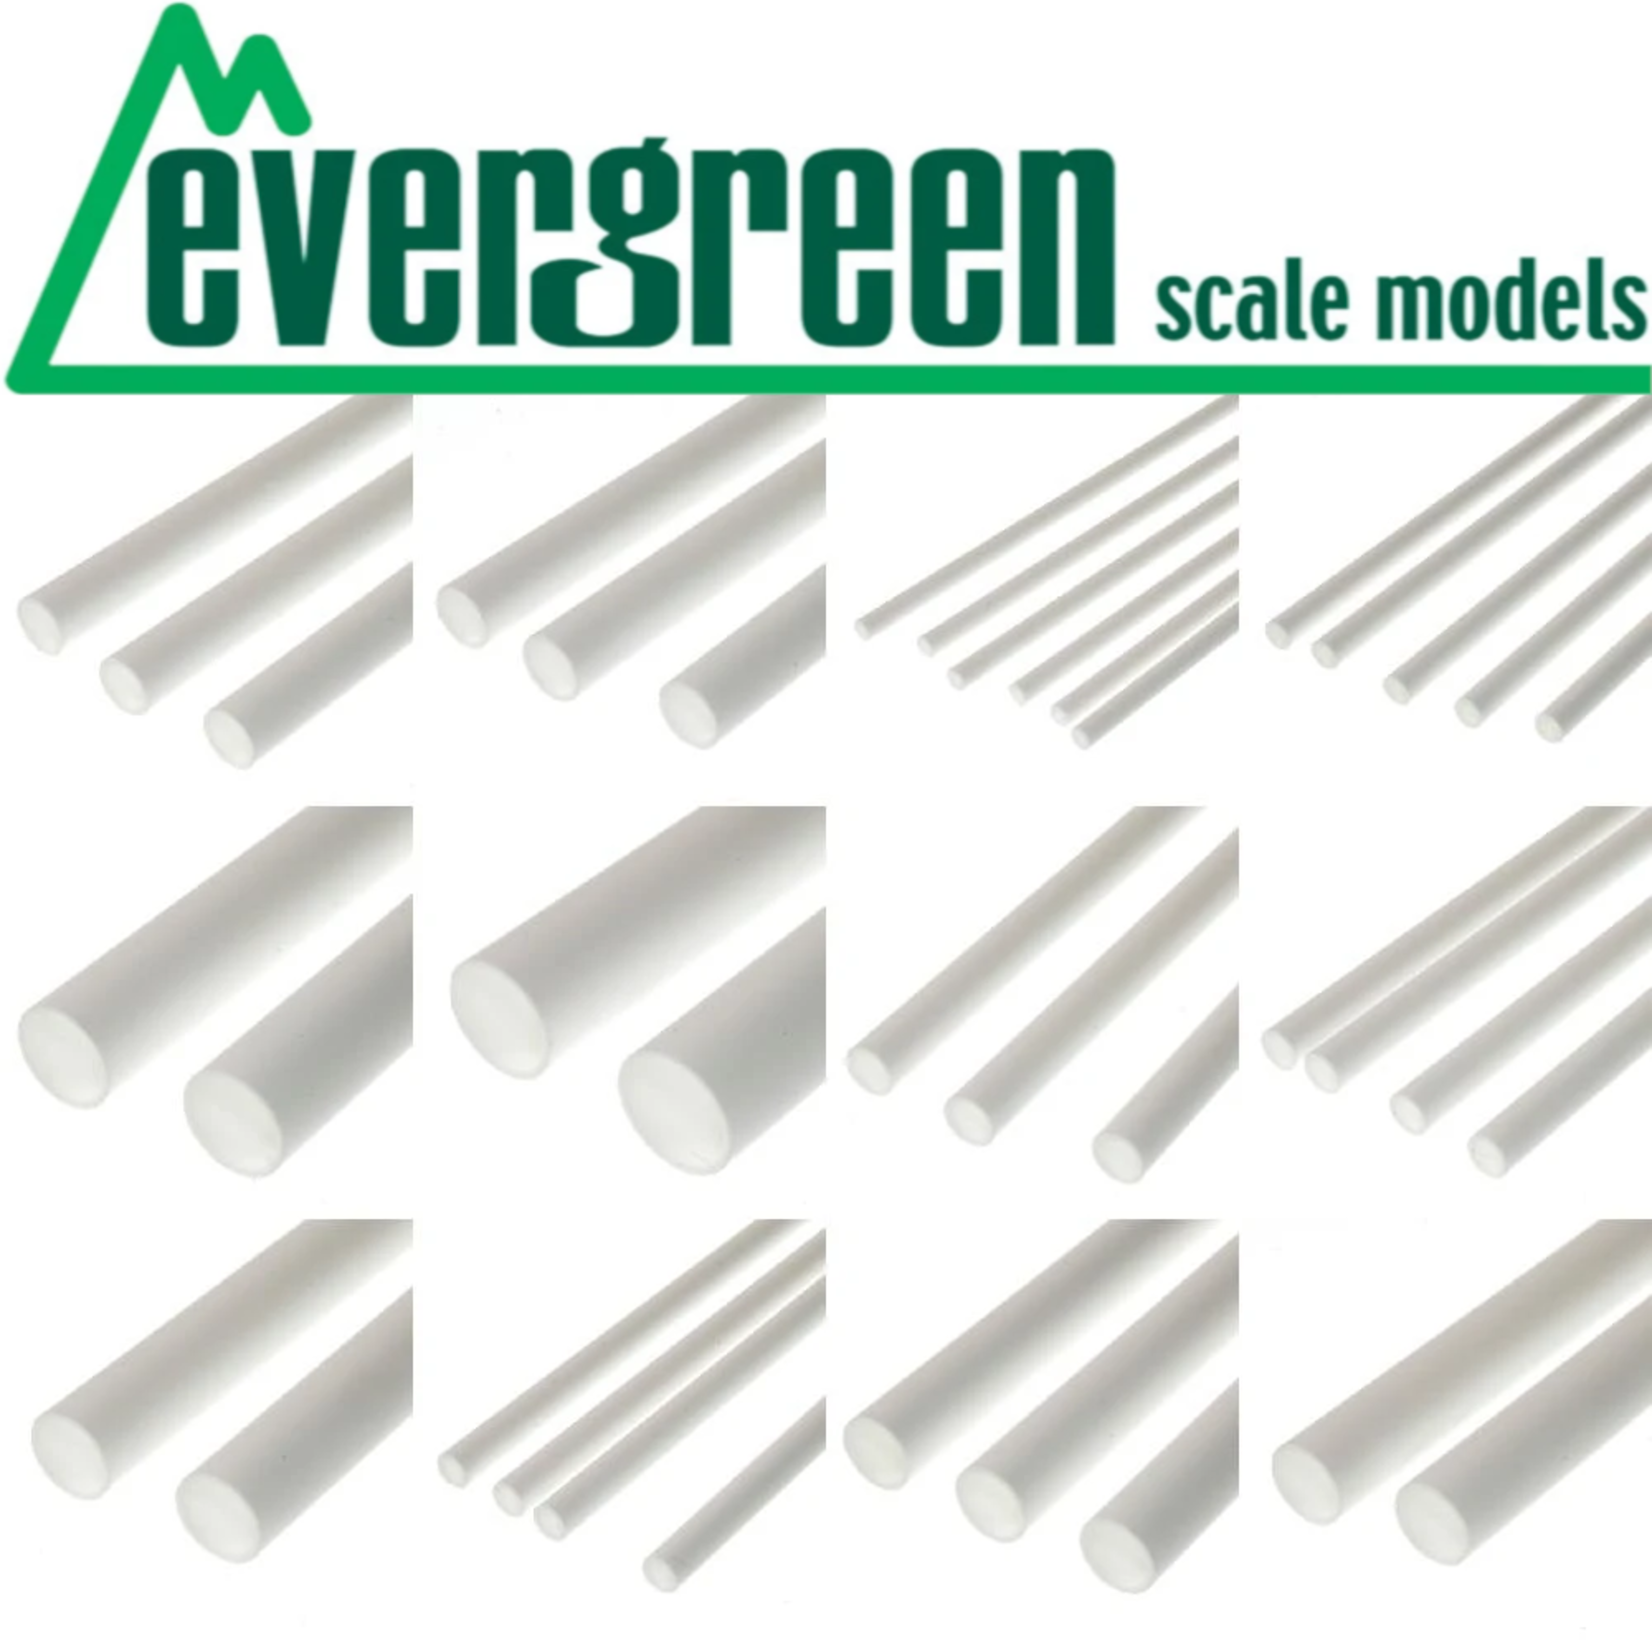 Evergreen Scale Models EVE9101 Styrene .010 Plain Sheet (8pc)